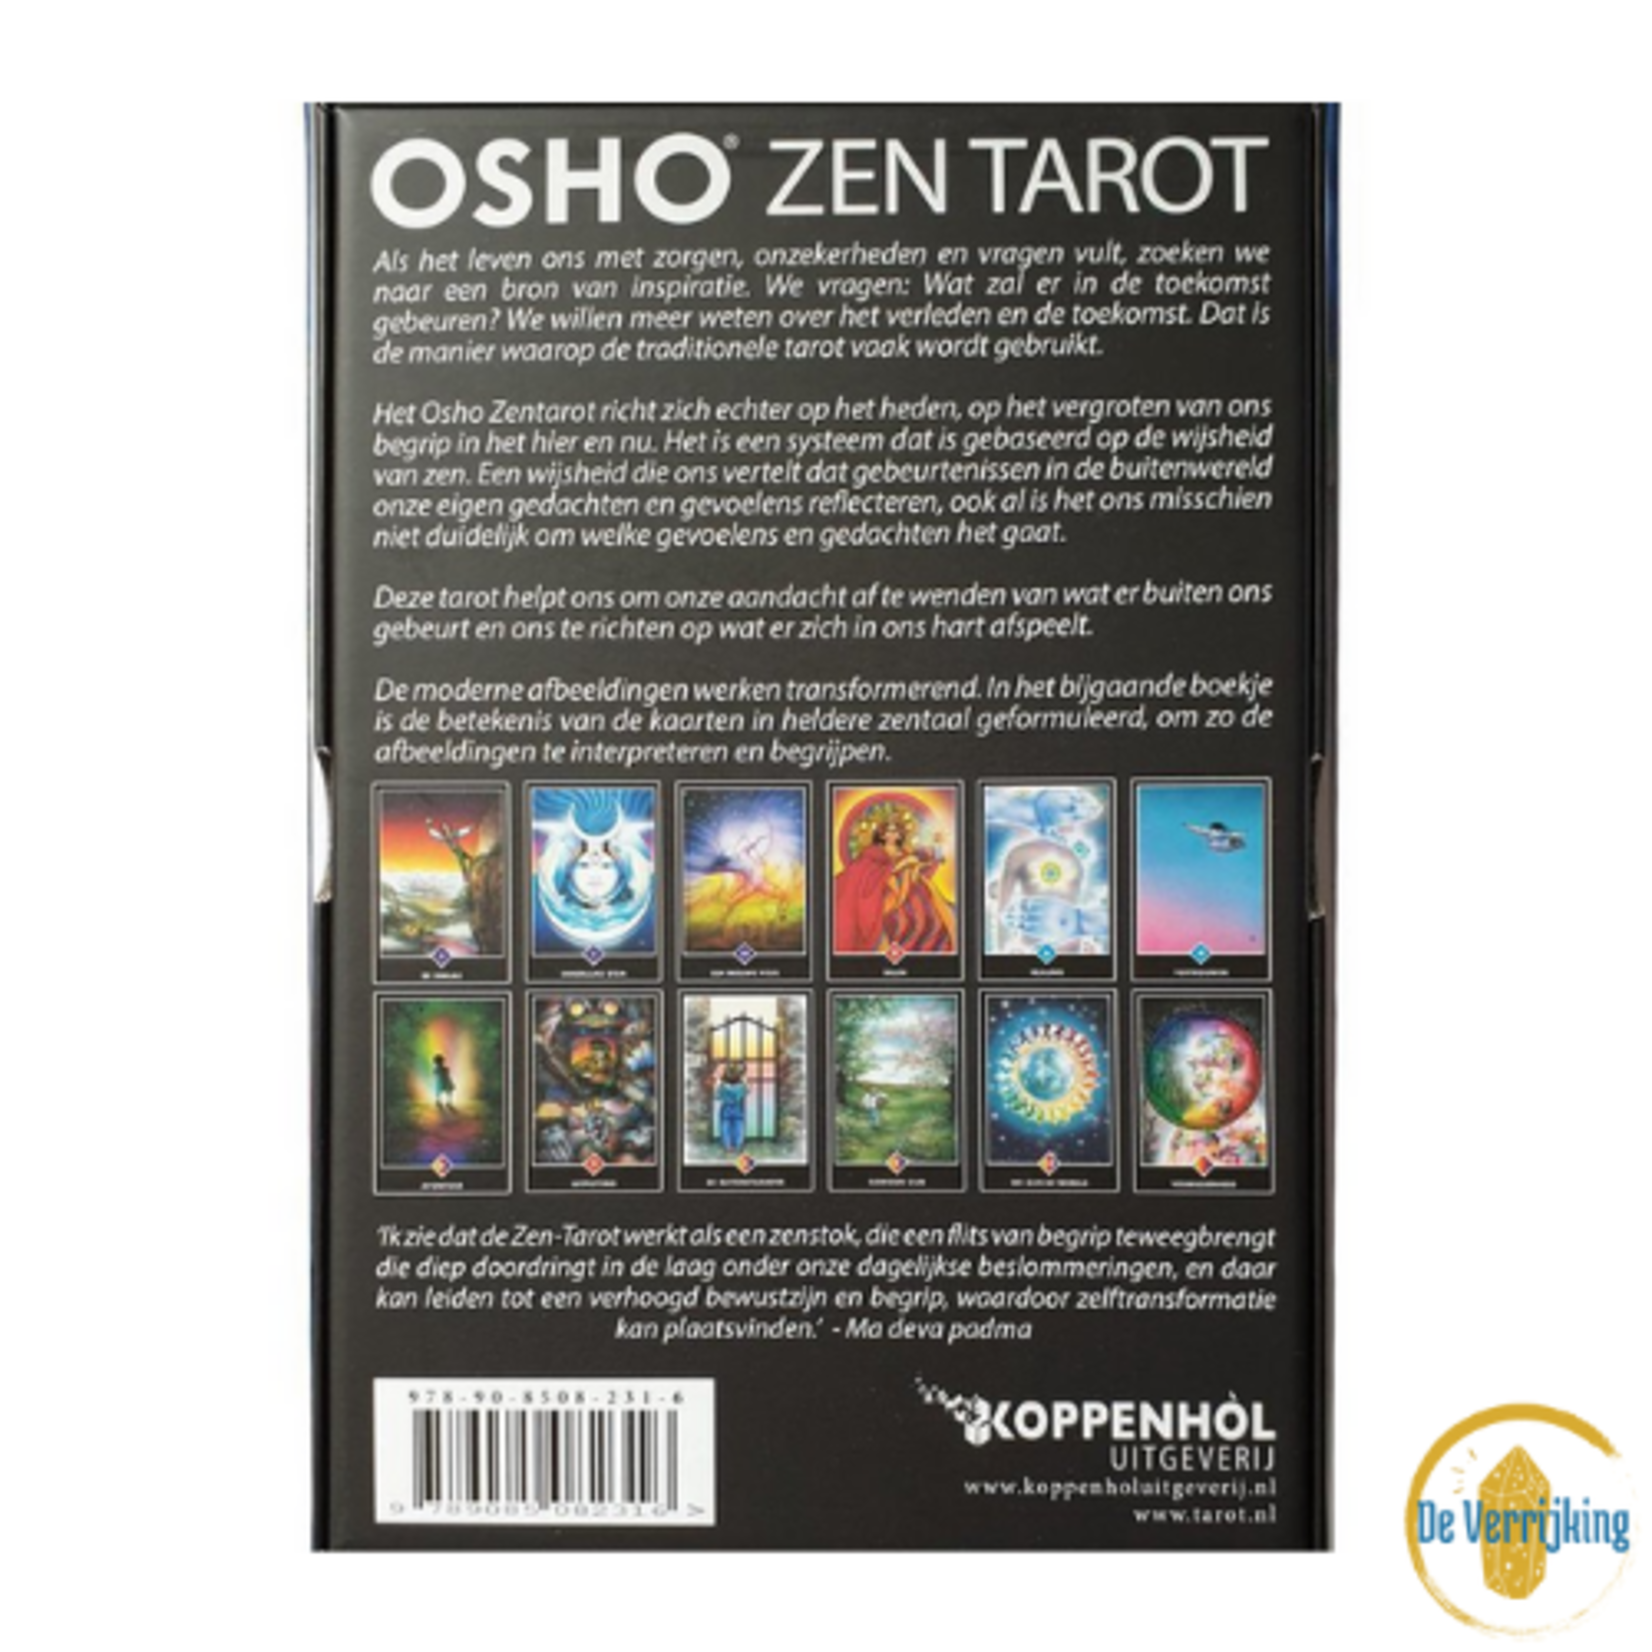 Koppenhol Uitgeverij BV Osho Zen Tarot